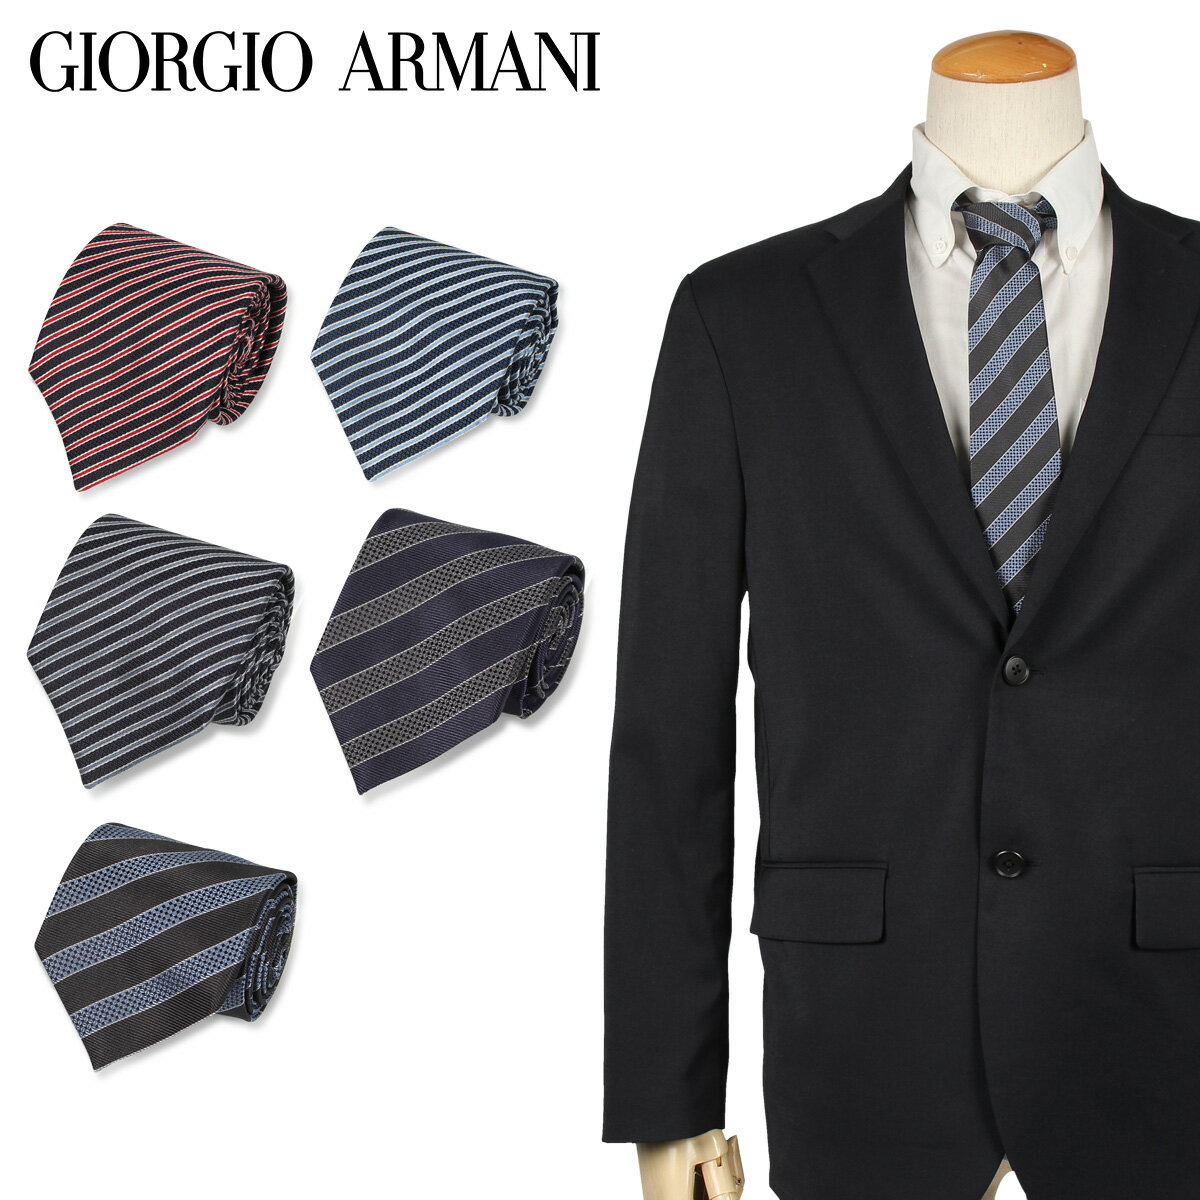 スーツ用ファッション小物, ネクタイ  GIORGIO ARMANI 